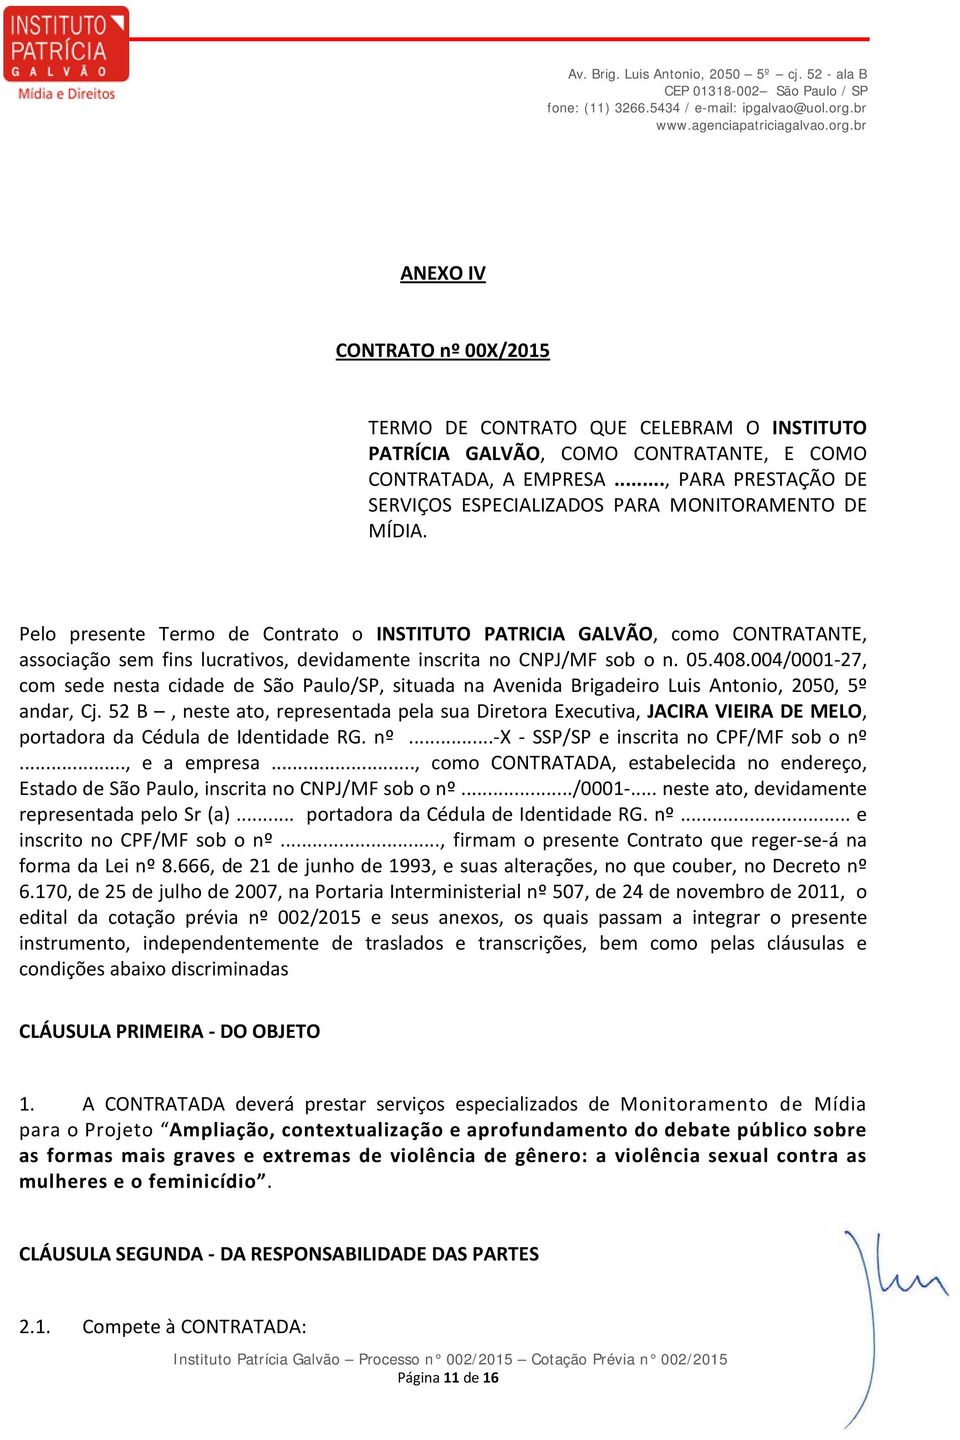 Pelo presente Termo de Contrato o INSTITUTO PATRICIA GALVÃO, como CONTRATANTE, associação sem fins lucrativos, devidamente inscrita no CNPJ/MF sob o n. 05.408.